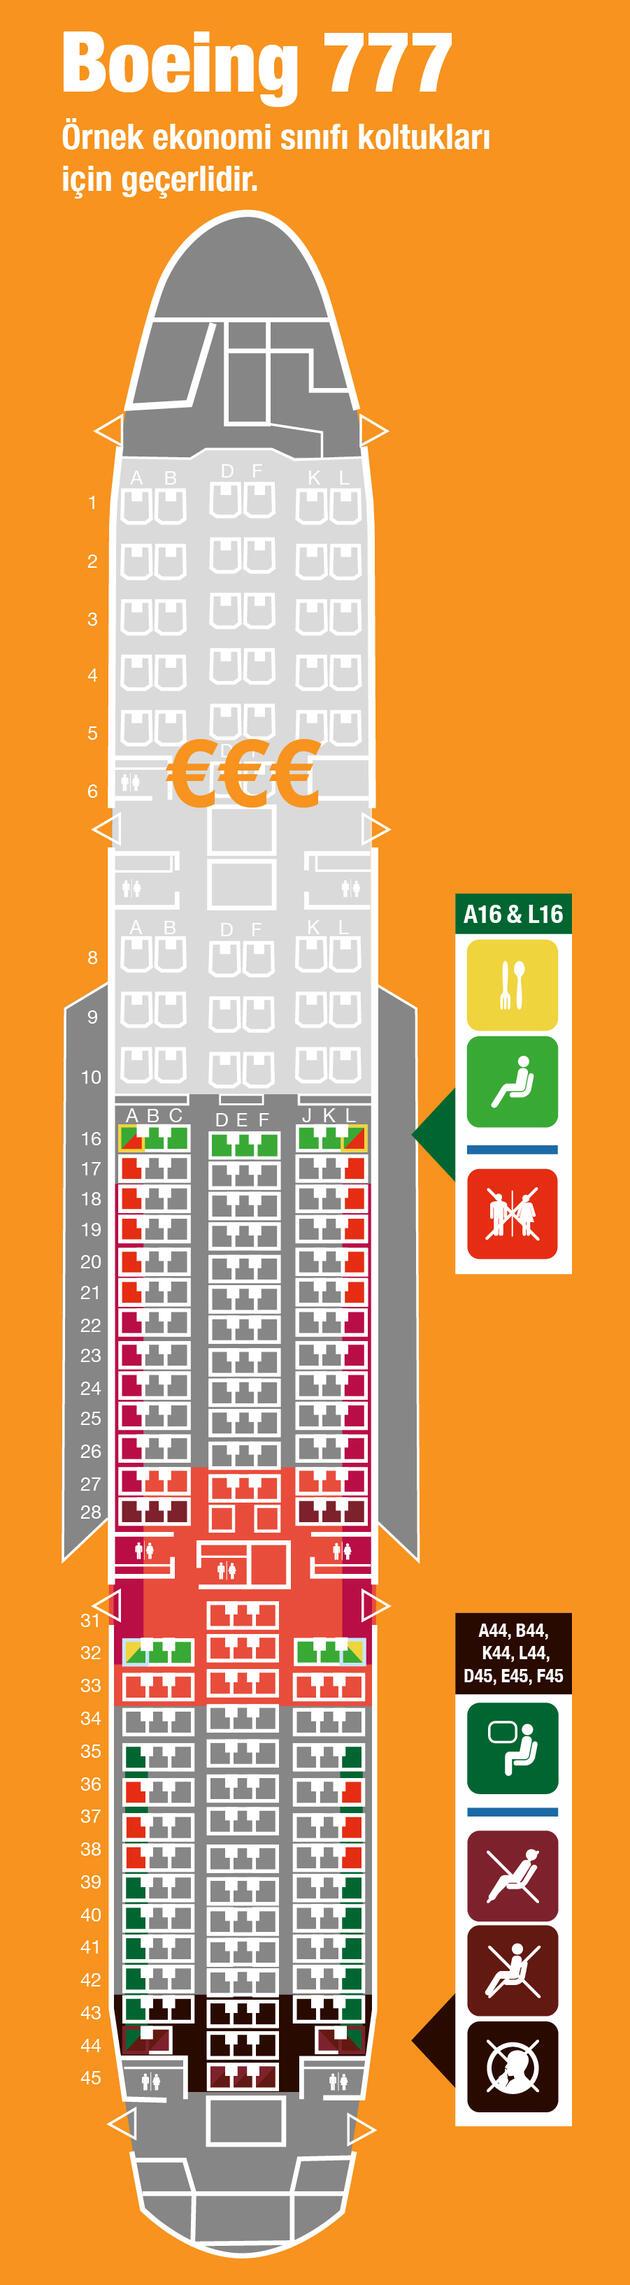 Uçakta en iyi koltuk nasıl seçilir?